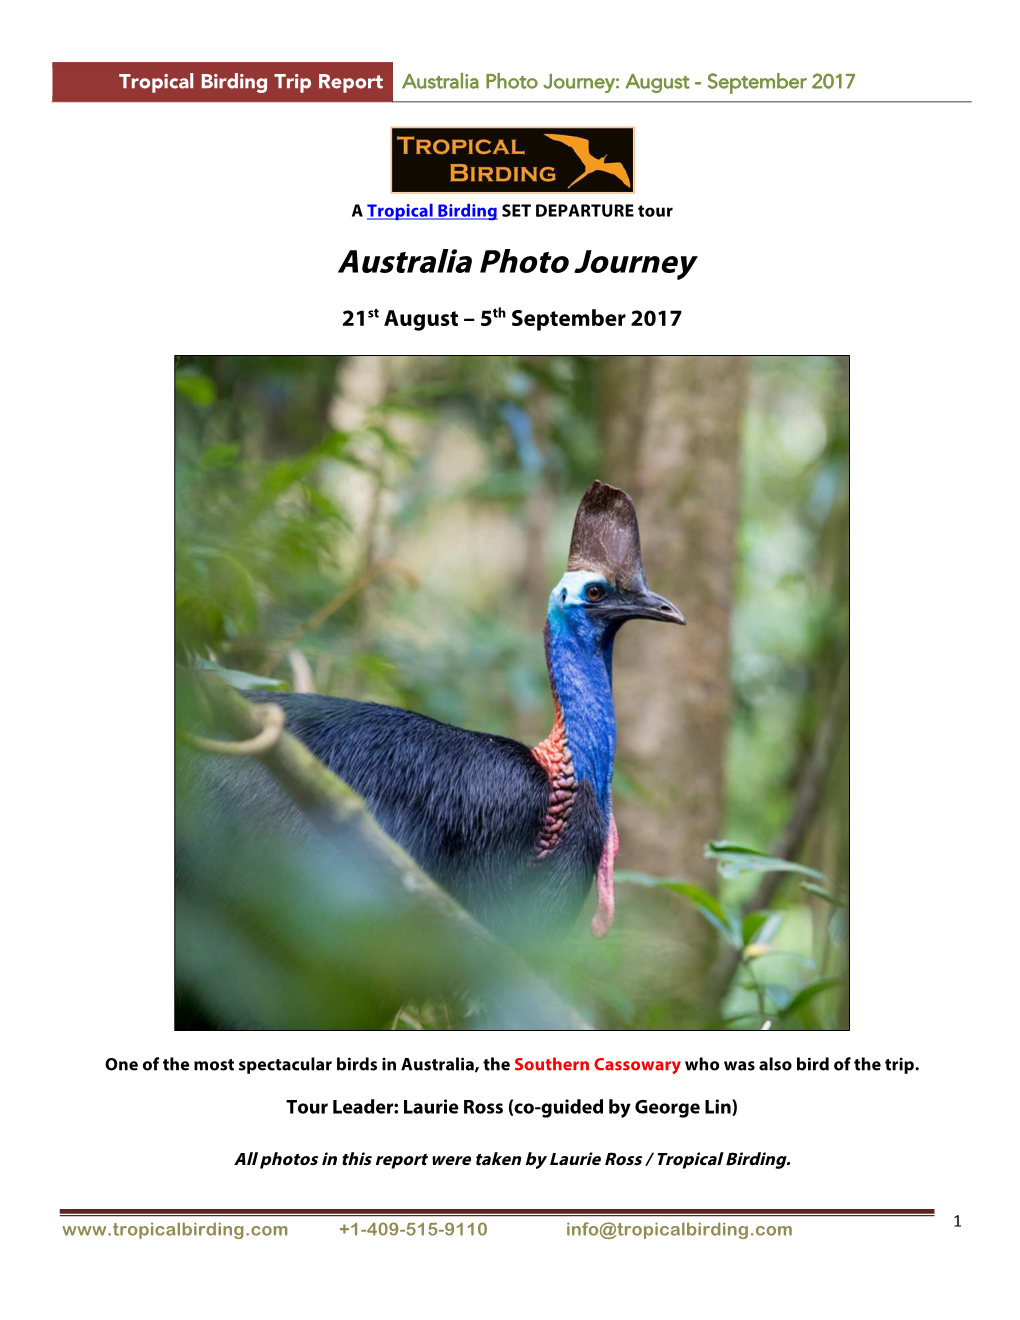 Australia Photo Journey: August - September 2017